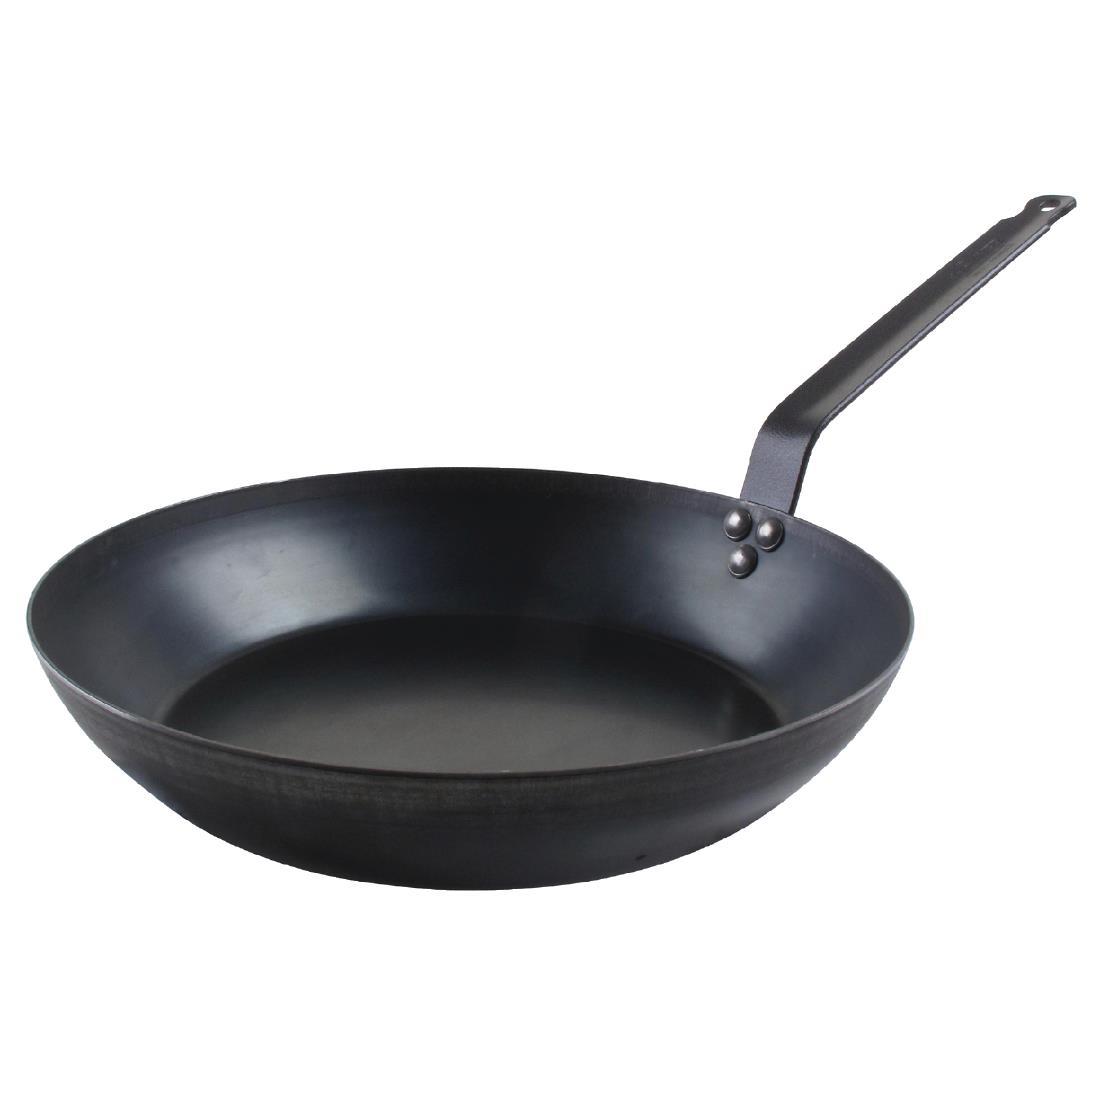 De Buyer Black Iron Frying Pan 240mm - DL951  - 1